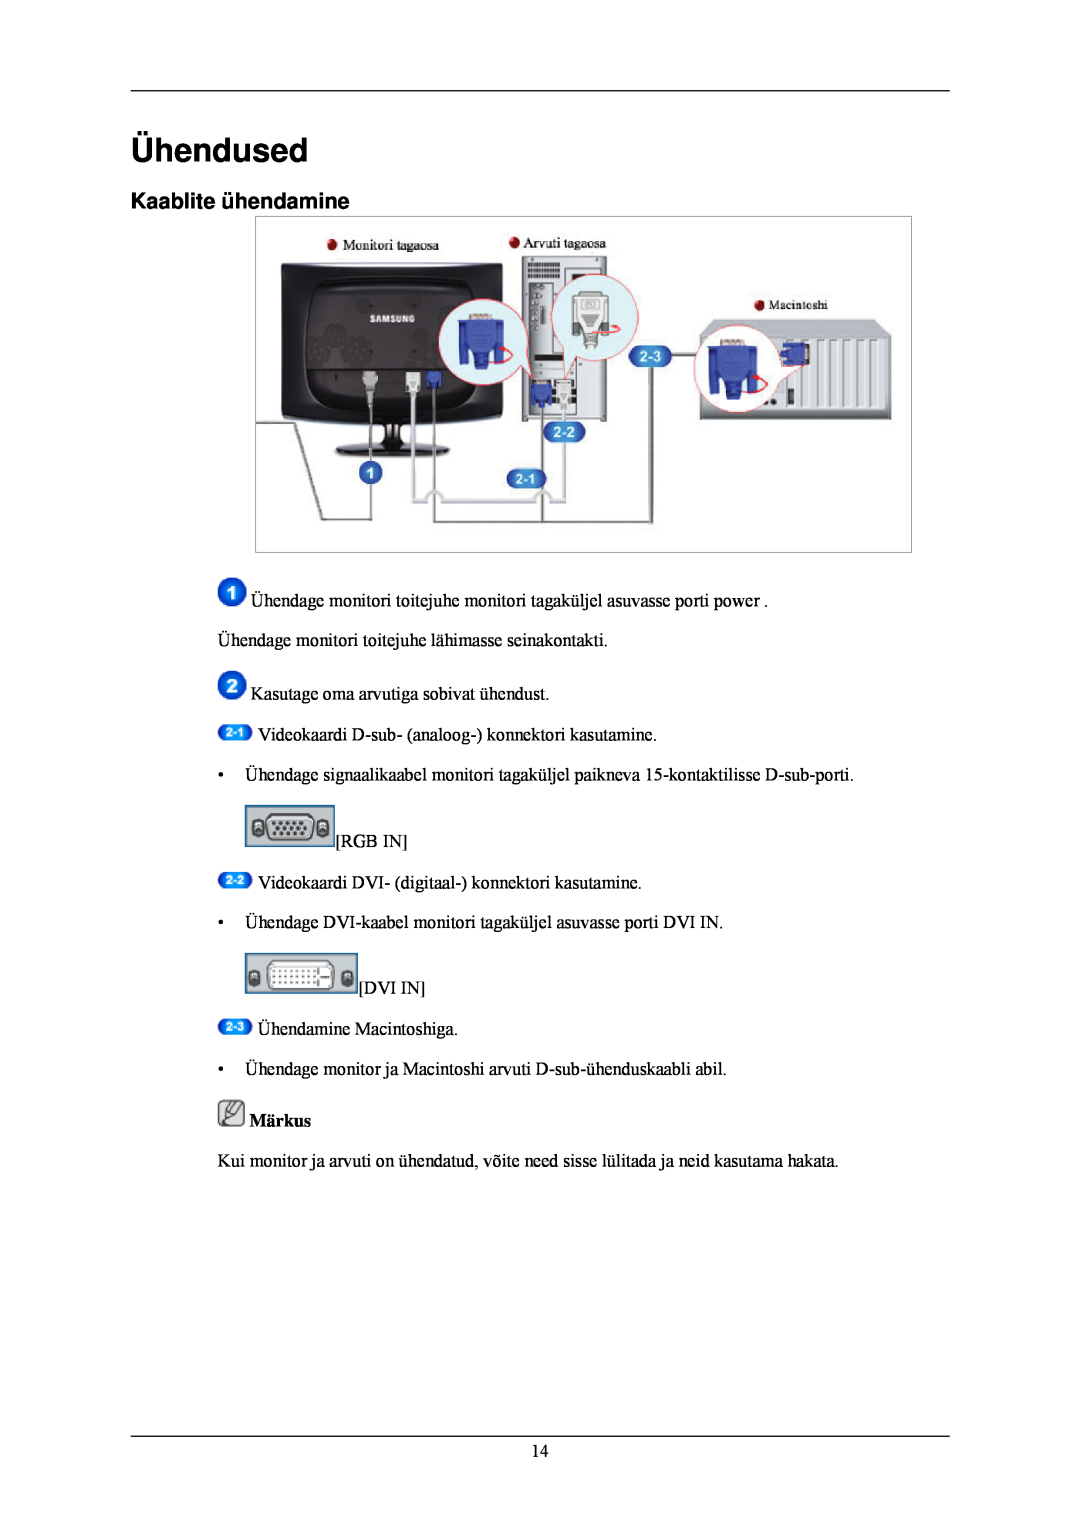 Samsung LS24CMKKFV/EN manual Ühendused, Kaablite ühendamine 